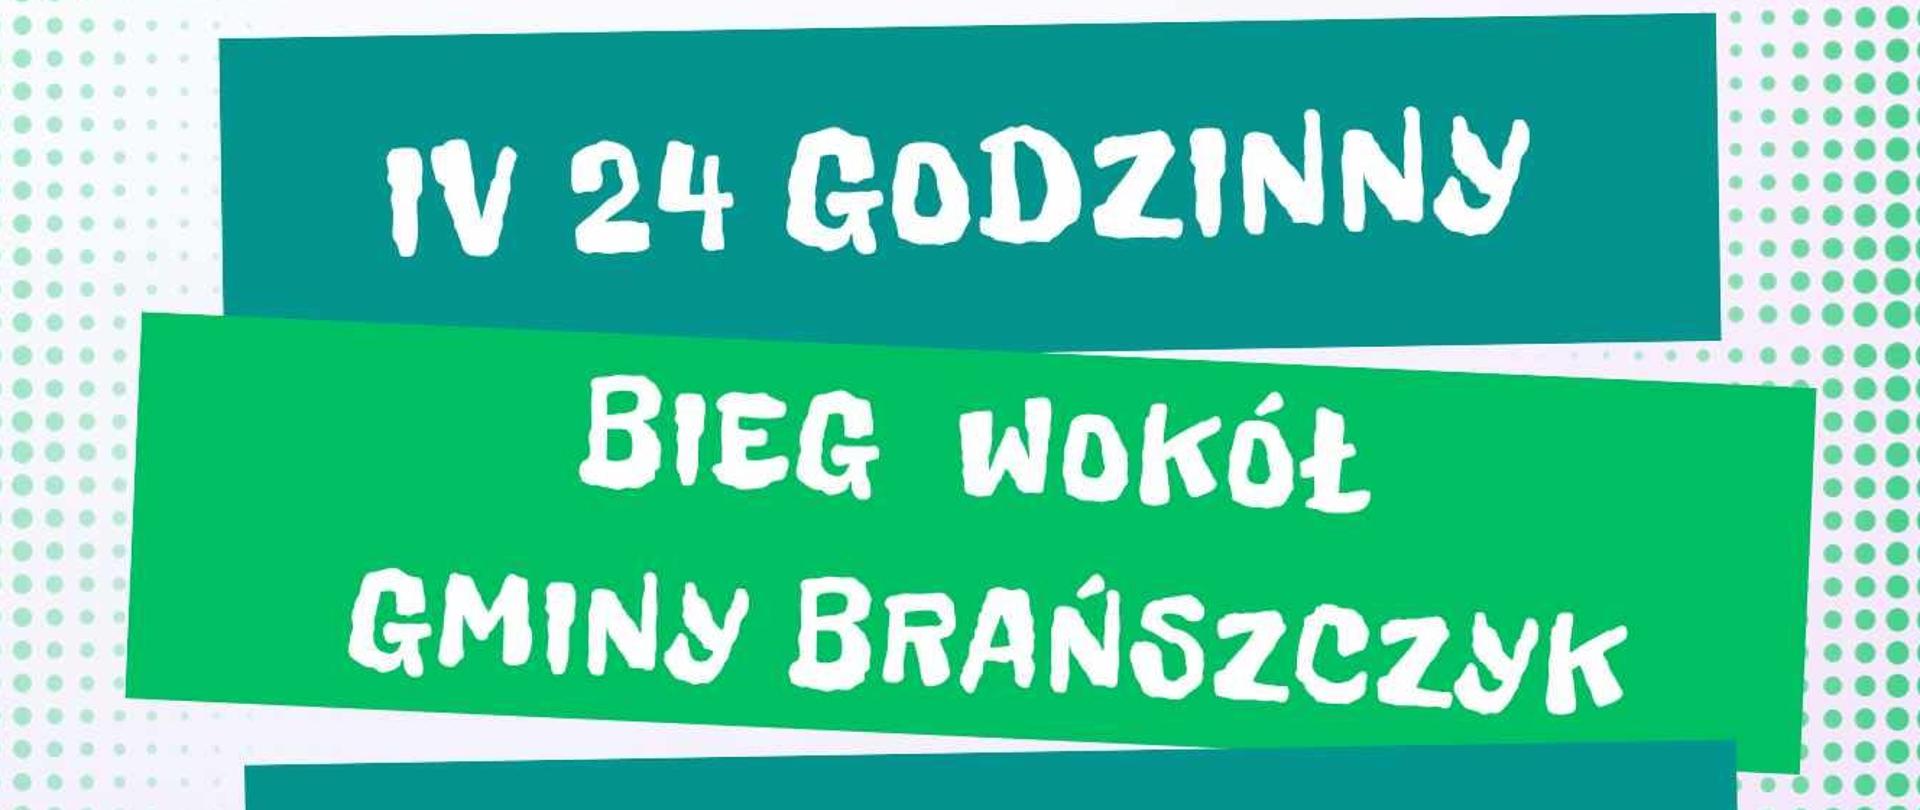 Plakat z informacją o IV 24 godzinnym biegu wokół Gminy Brańszczyk, który odbędzie się 29 września 2023 roku
Szczegóły trasy: https://tiny.pl/cdc65
Zapisy: https://formularz.ultimasport.pl/195